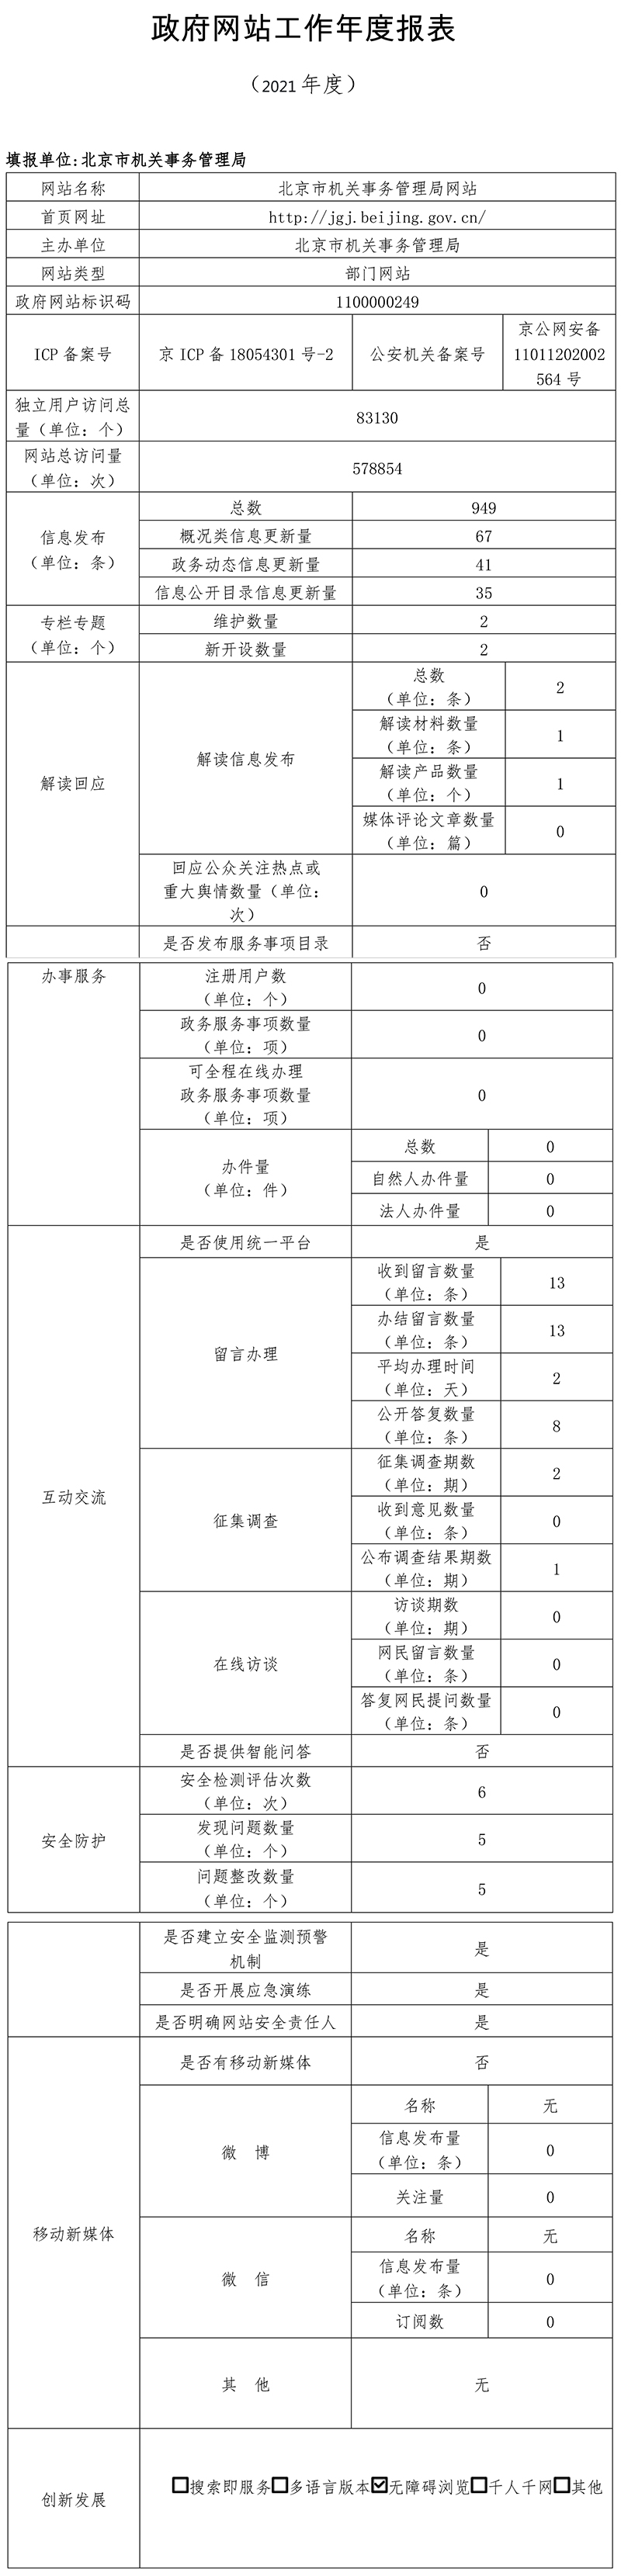 北京市机关事务管理局2021年政府网站年度工作报表